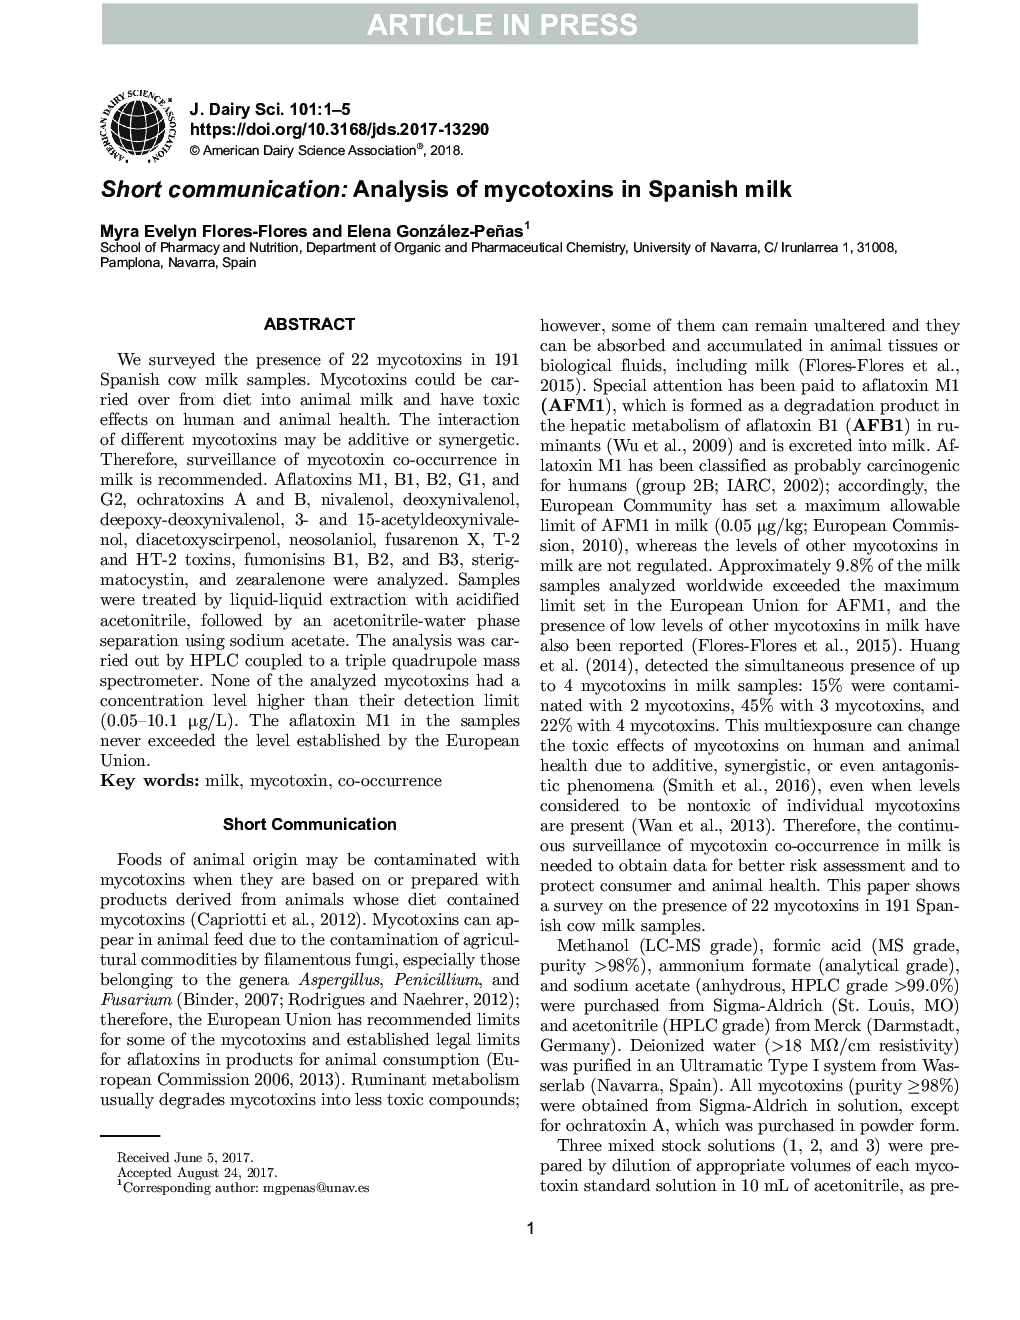 ارتباط کوتاه: تجزیه و تحلیل مایکوتوکسین ها در شیر اسپانیا 